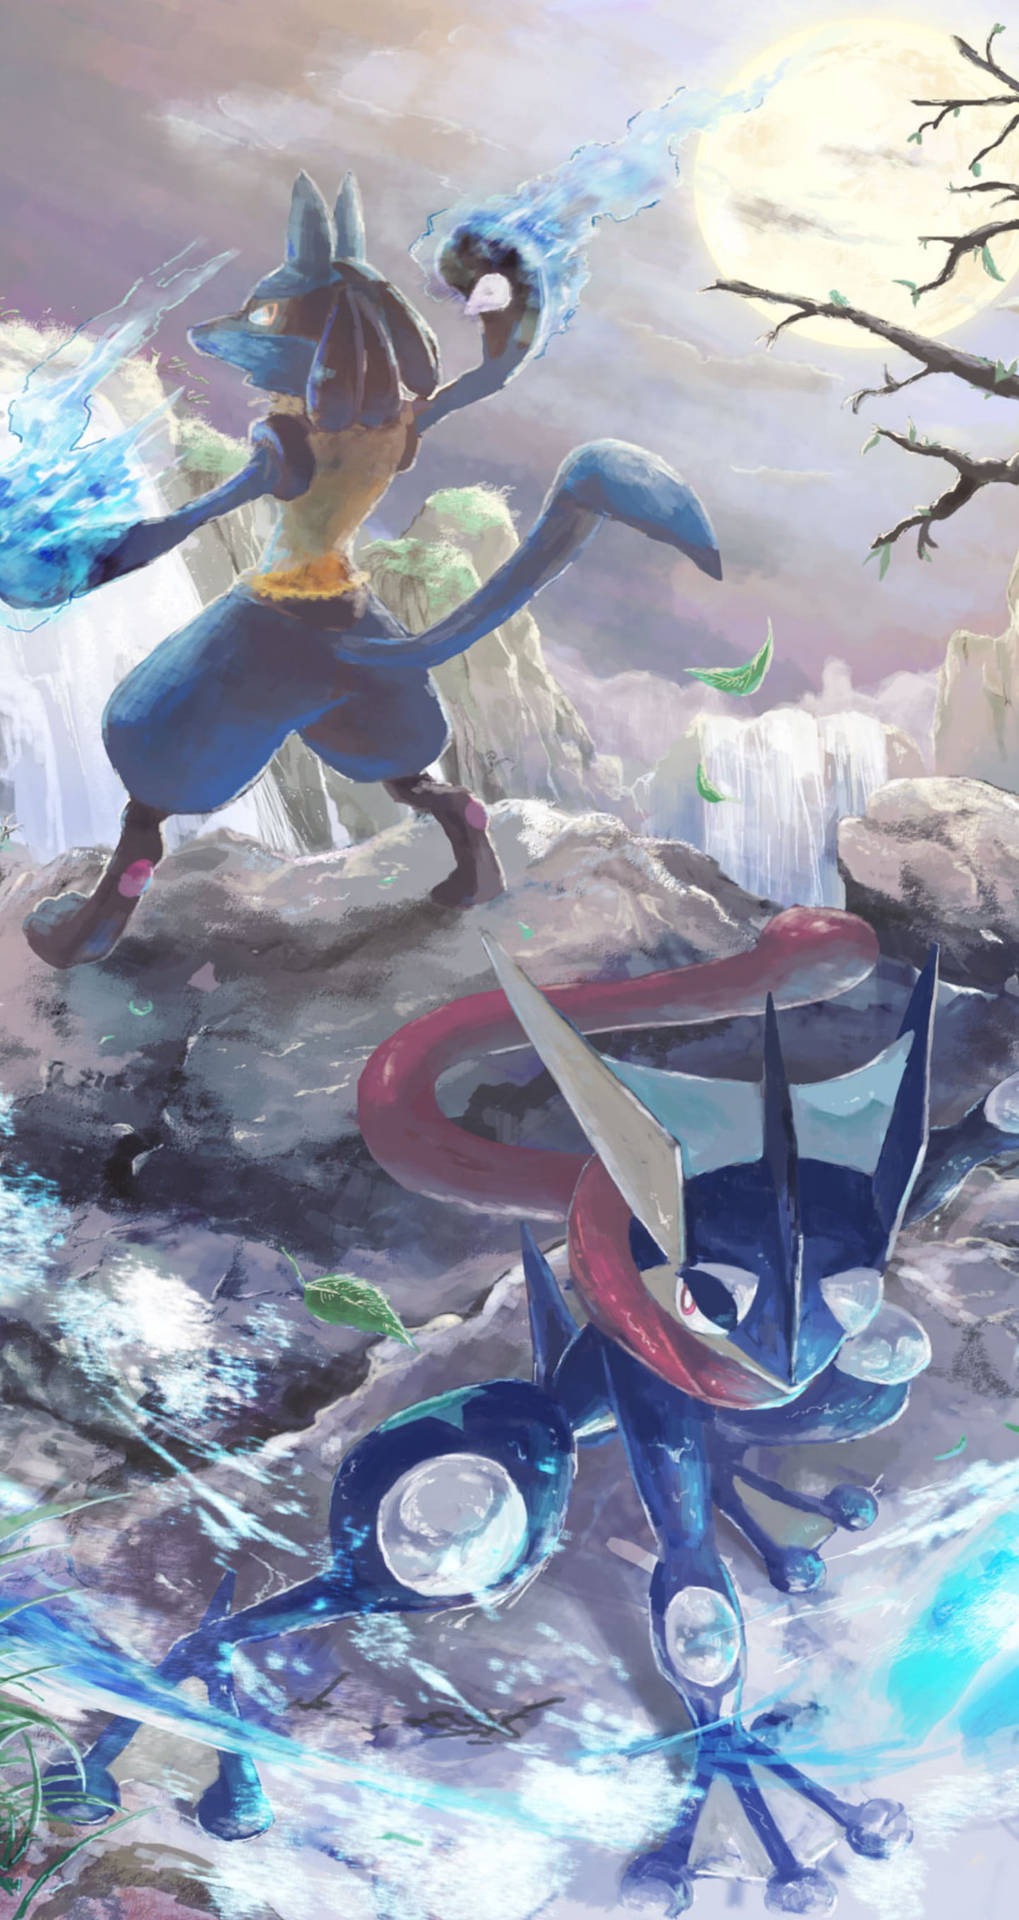 Lucario Wallpaper pokemon  Pokemon, Imagem de fundo para iphone